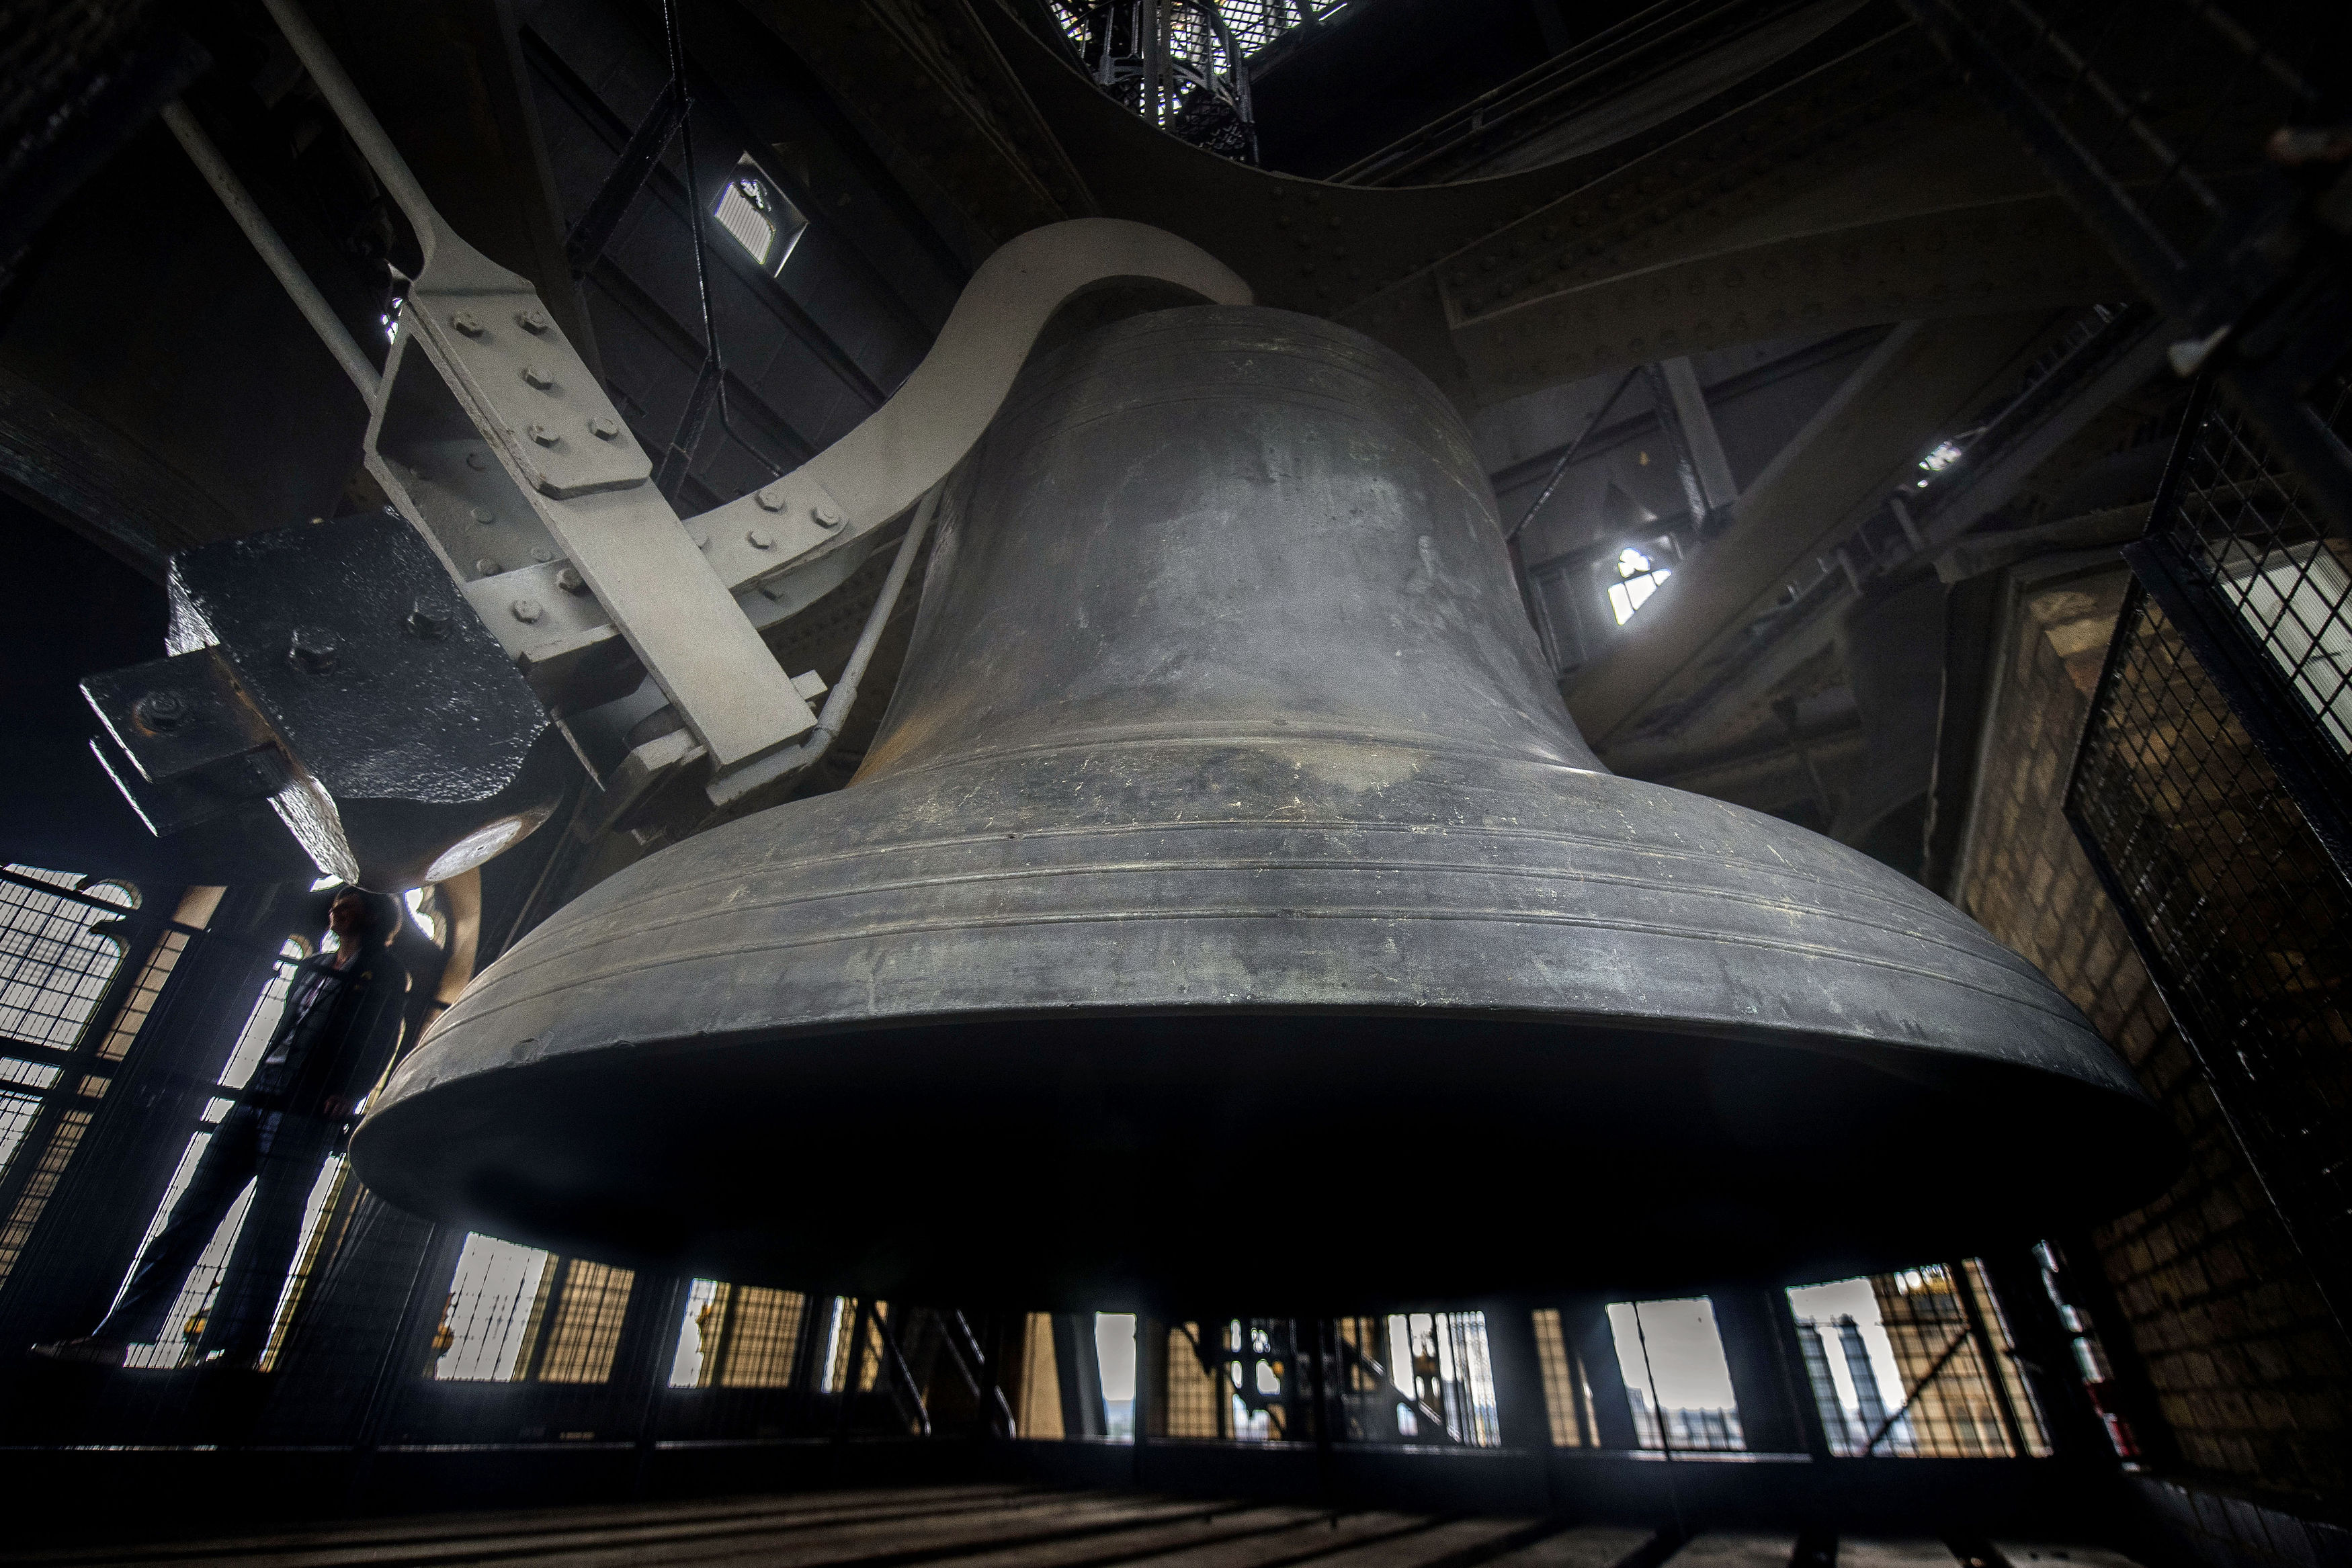 The Big Ben bell